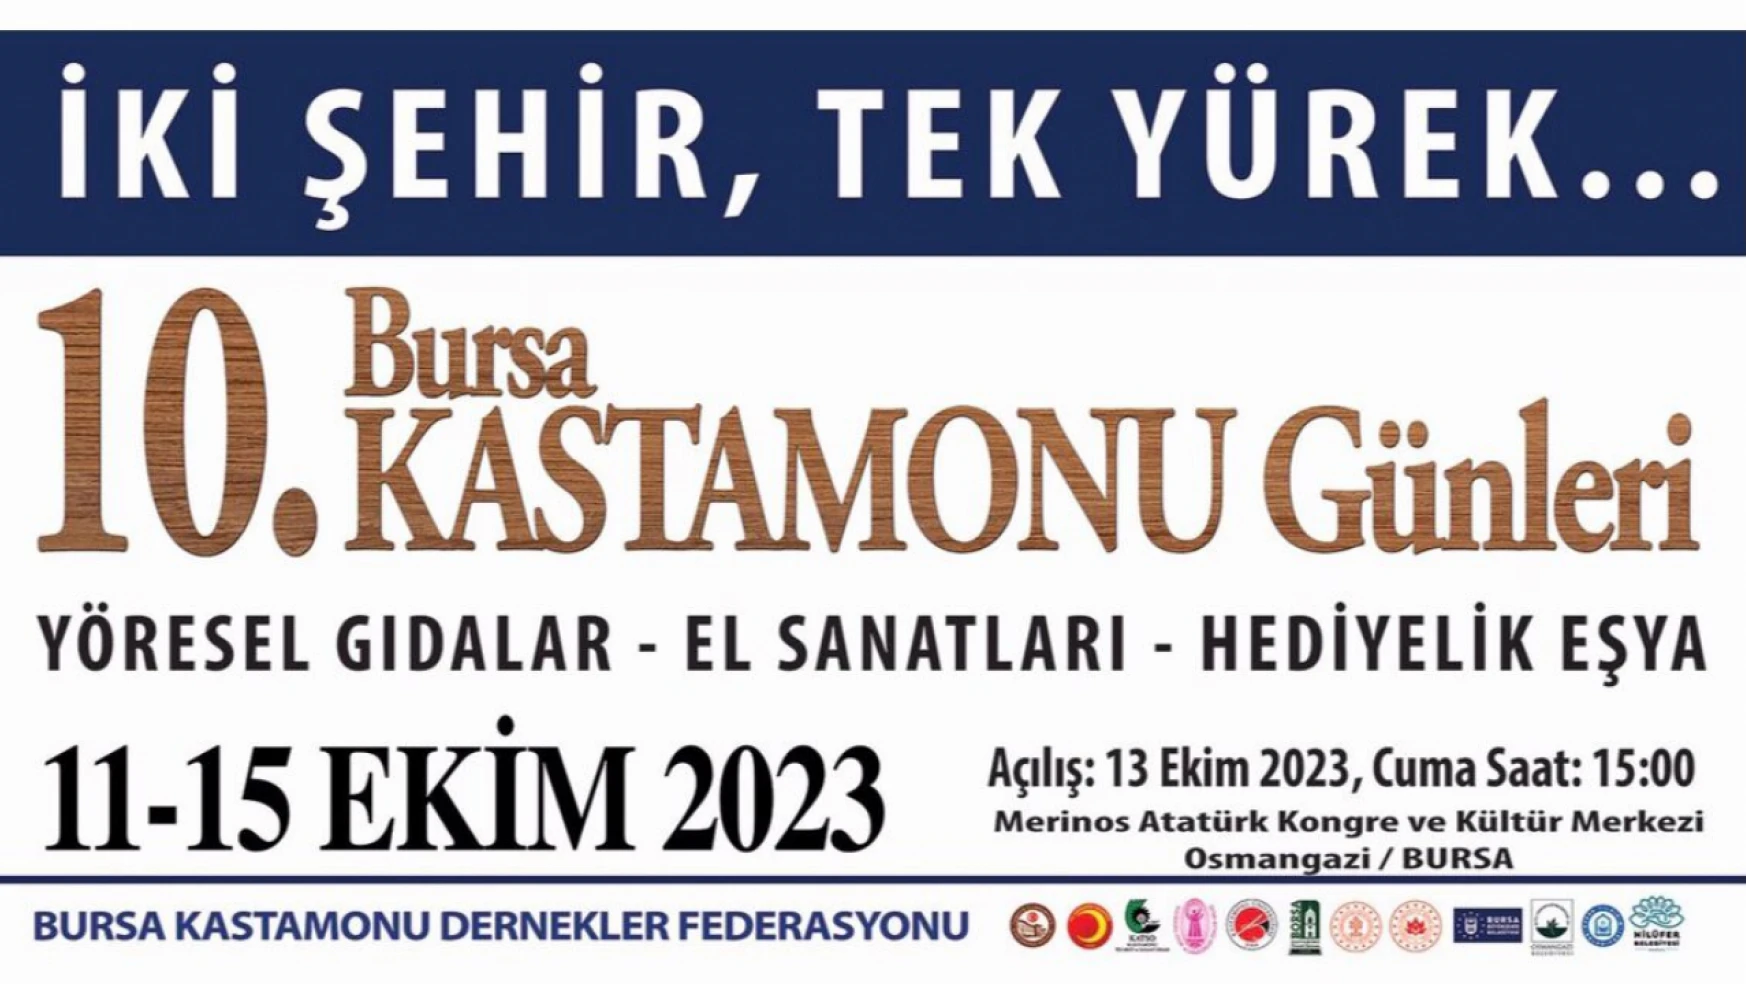 Bursa, Kastamonu Günleri'ne hazırlanıyor